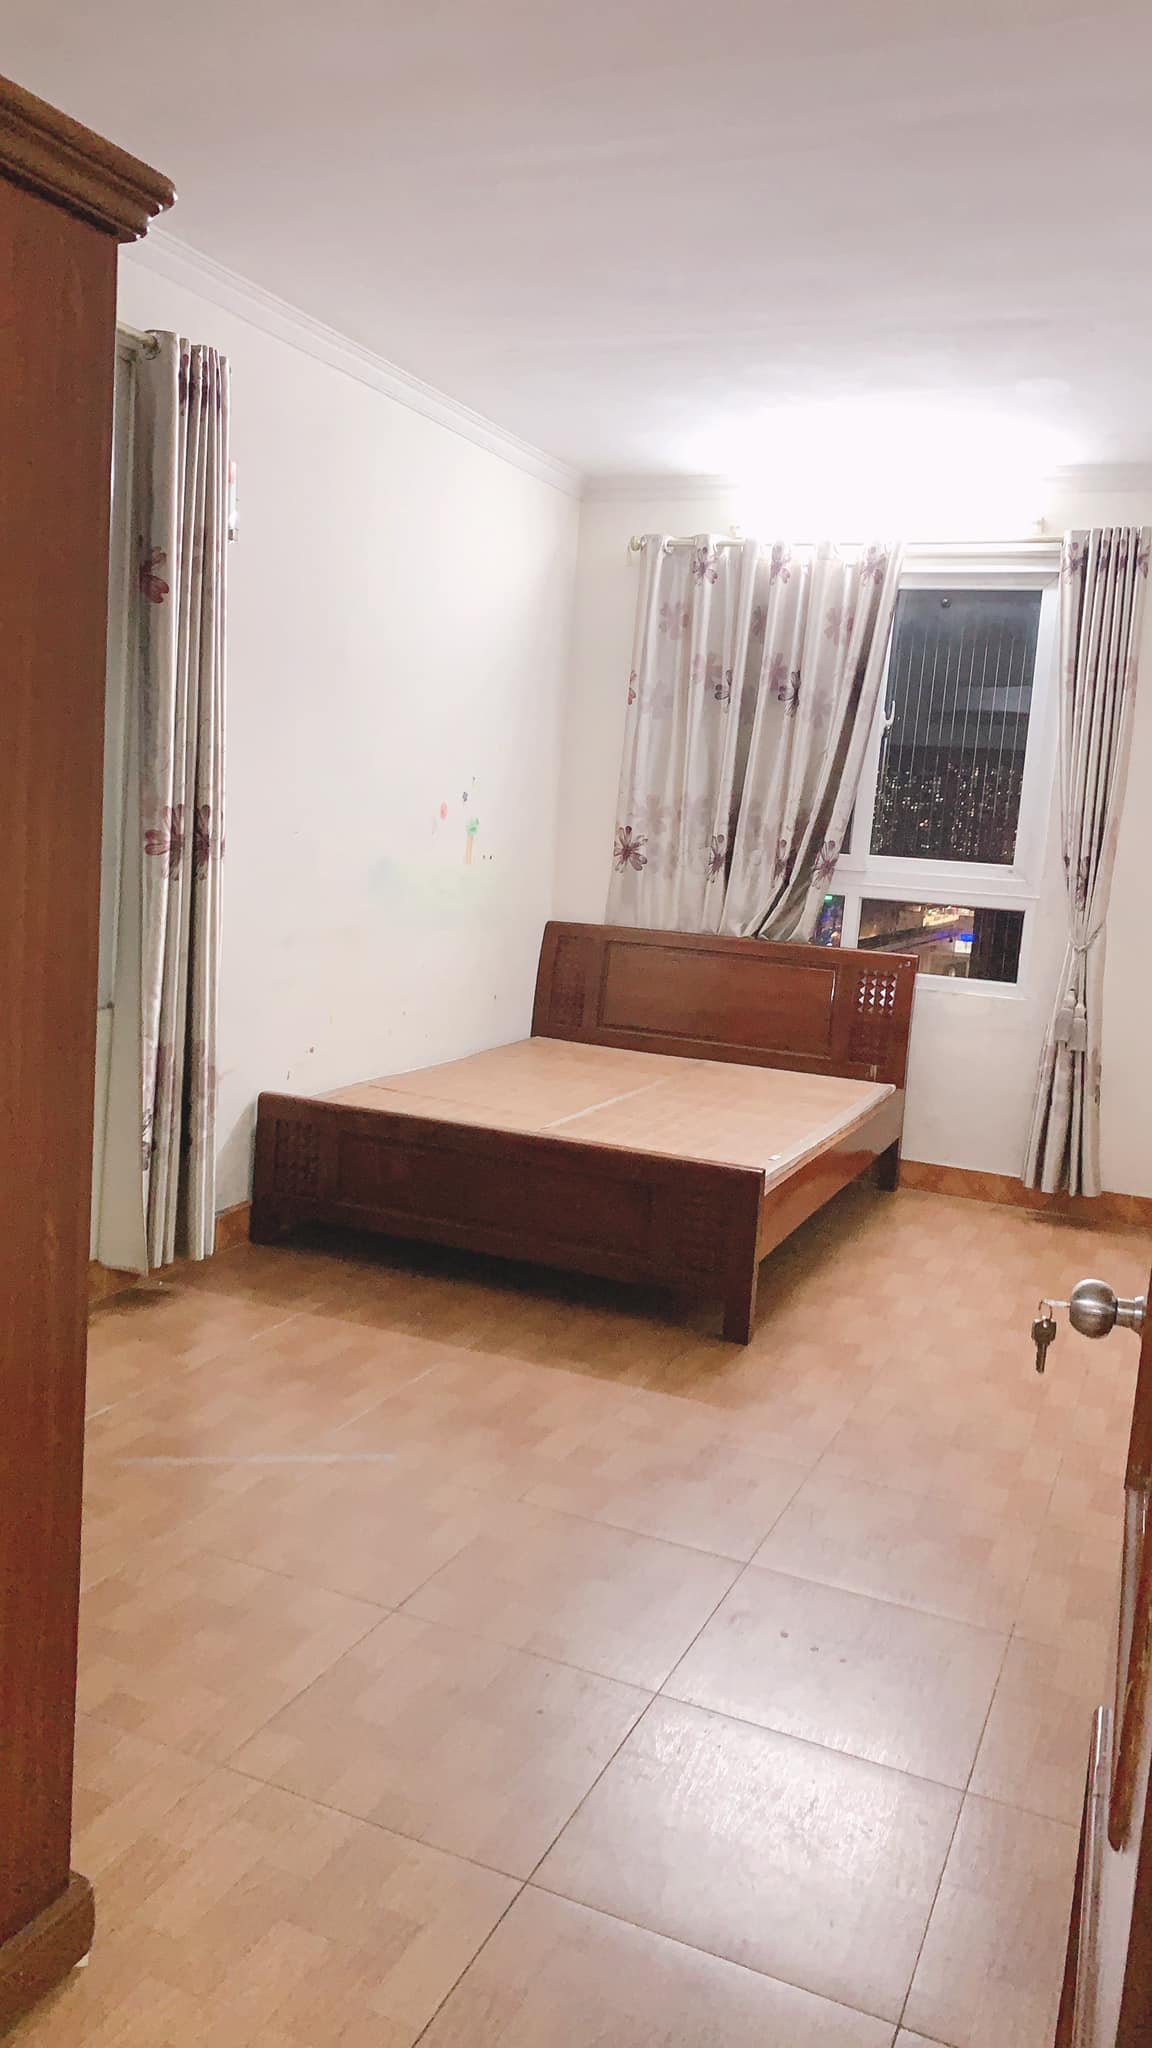 Cho thuê căn hộ H10 475 Nguyễn Trãi 85m2, 2 ngủ, 2vs thiếu điện tử giá 10tr vào 3/7 1011039